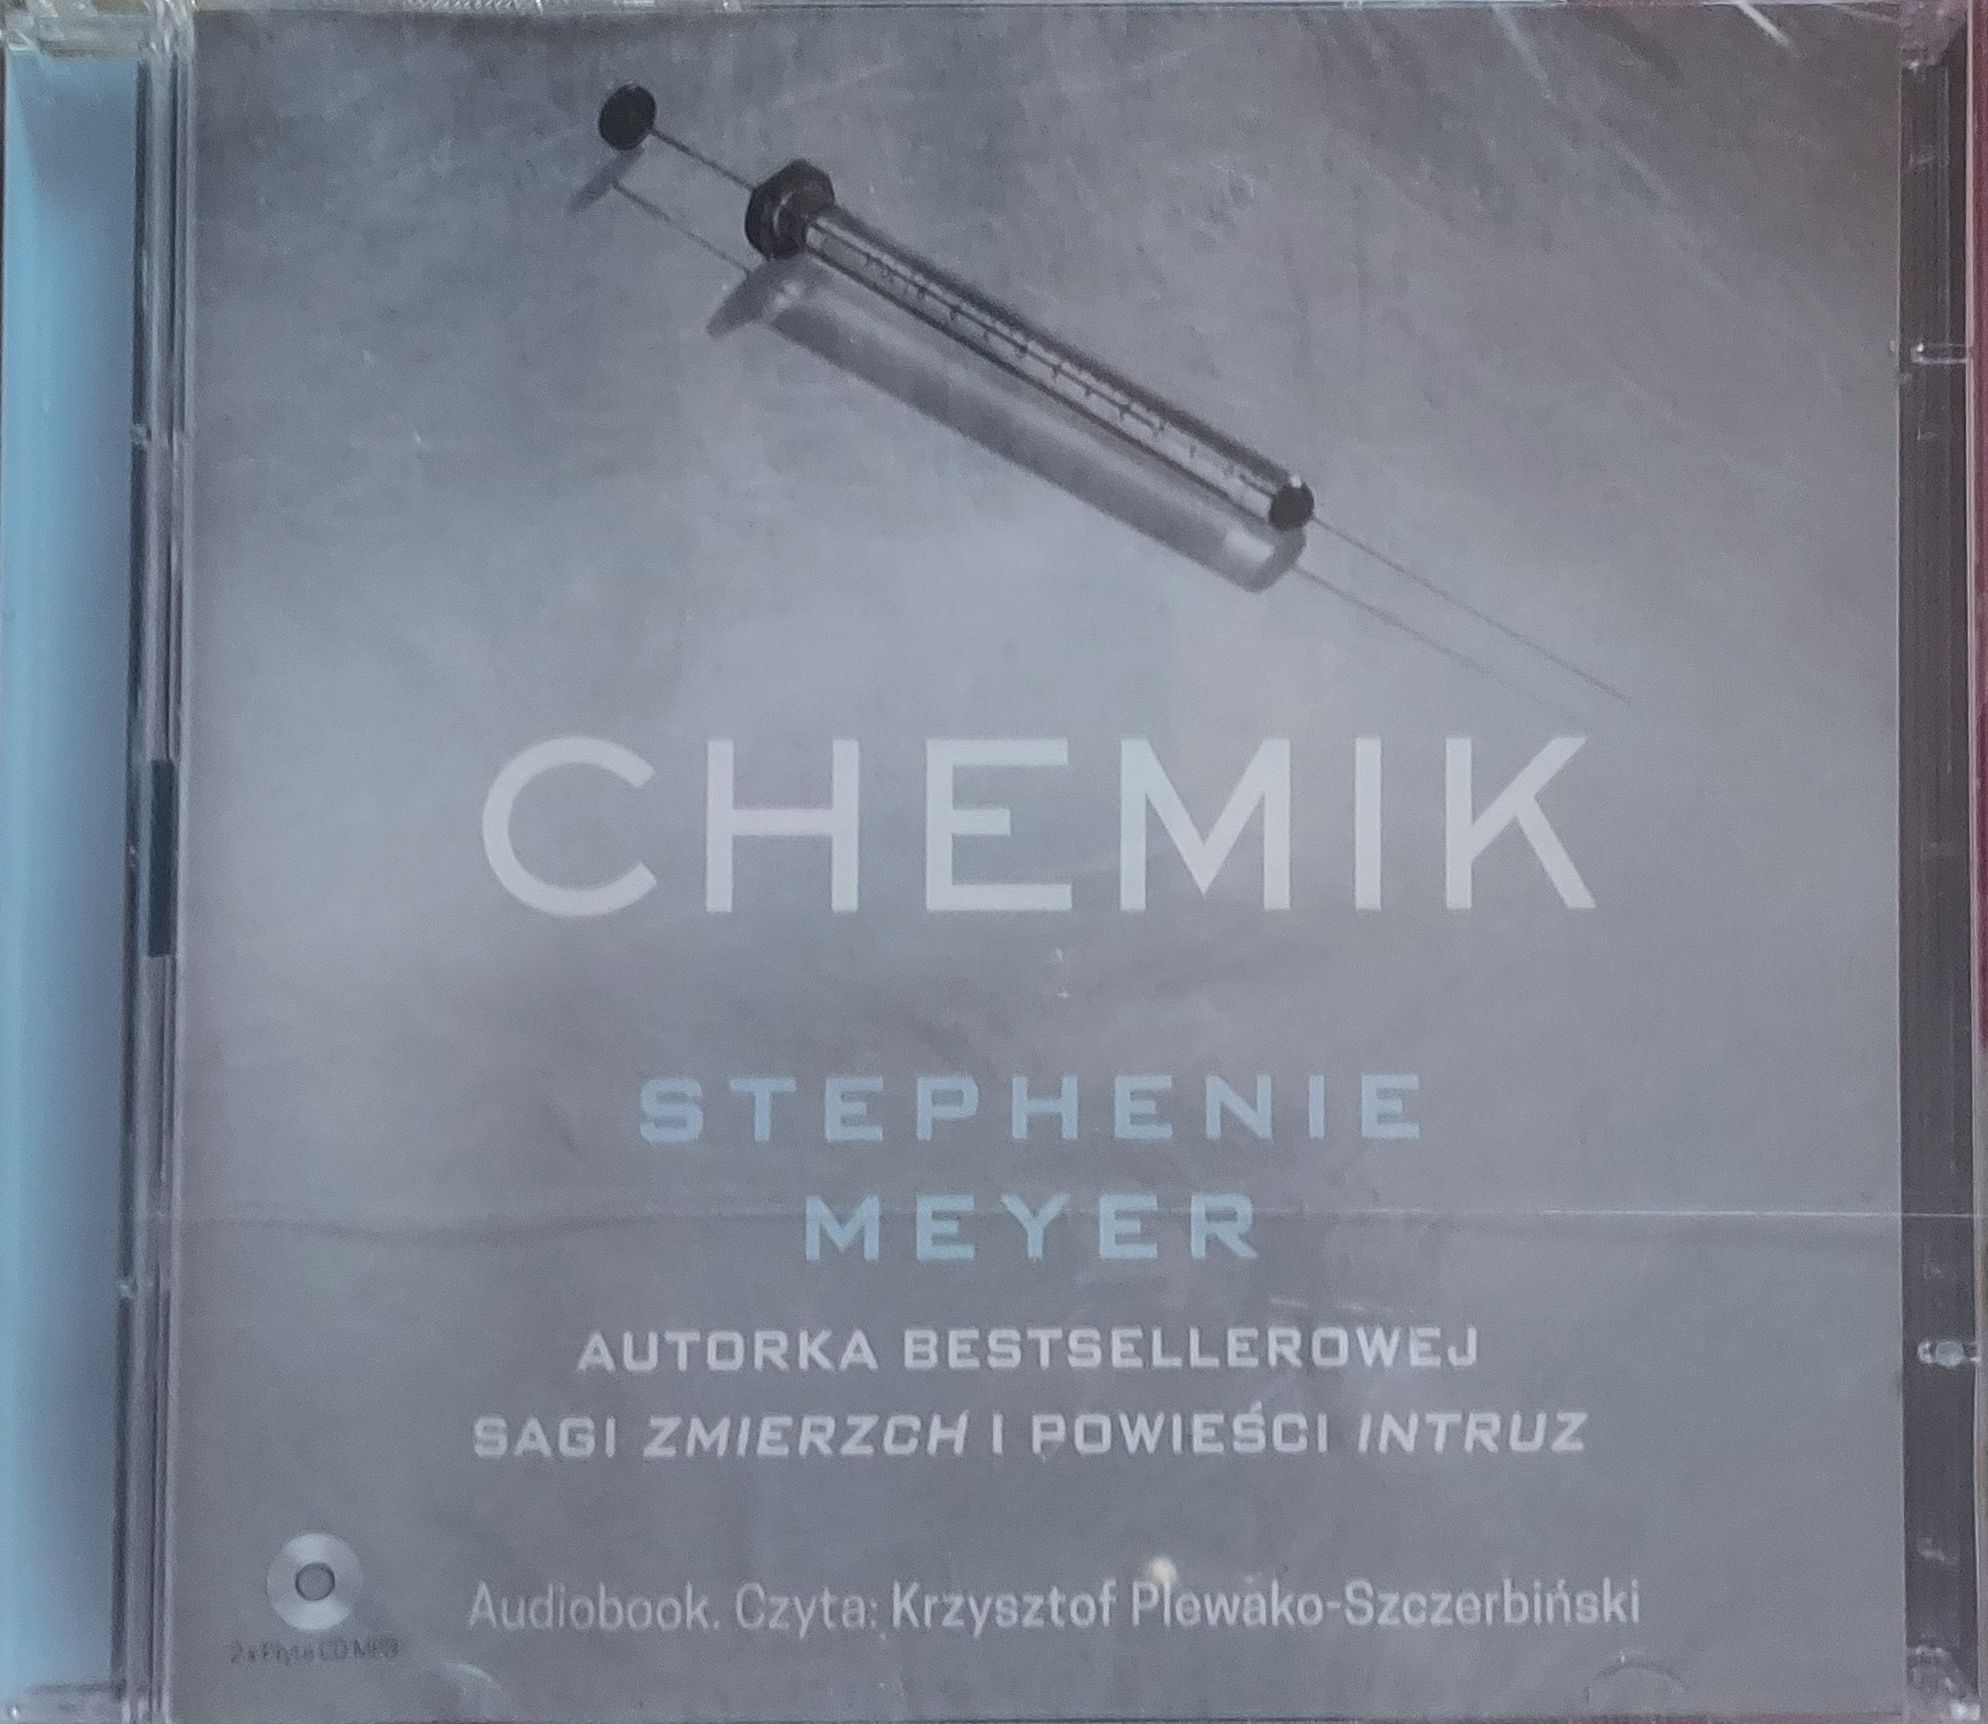 Stephenie Meyers Chemik Audiobook z gatunku dreszczowiec